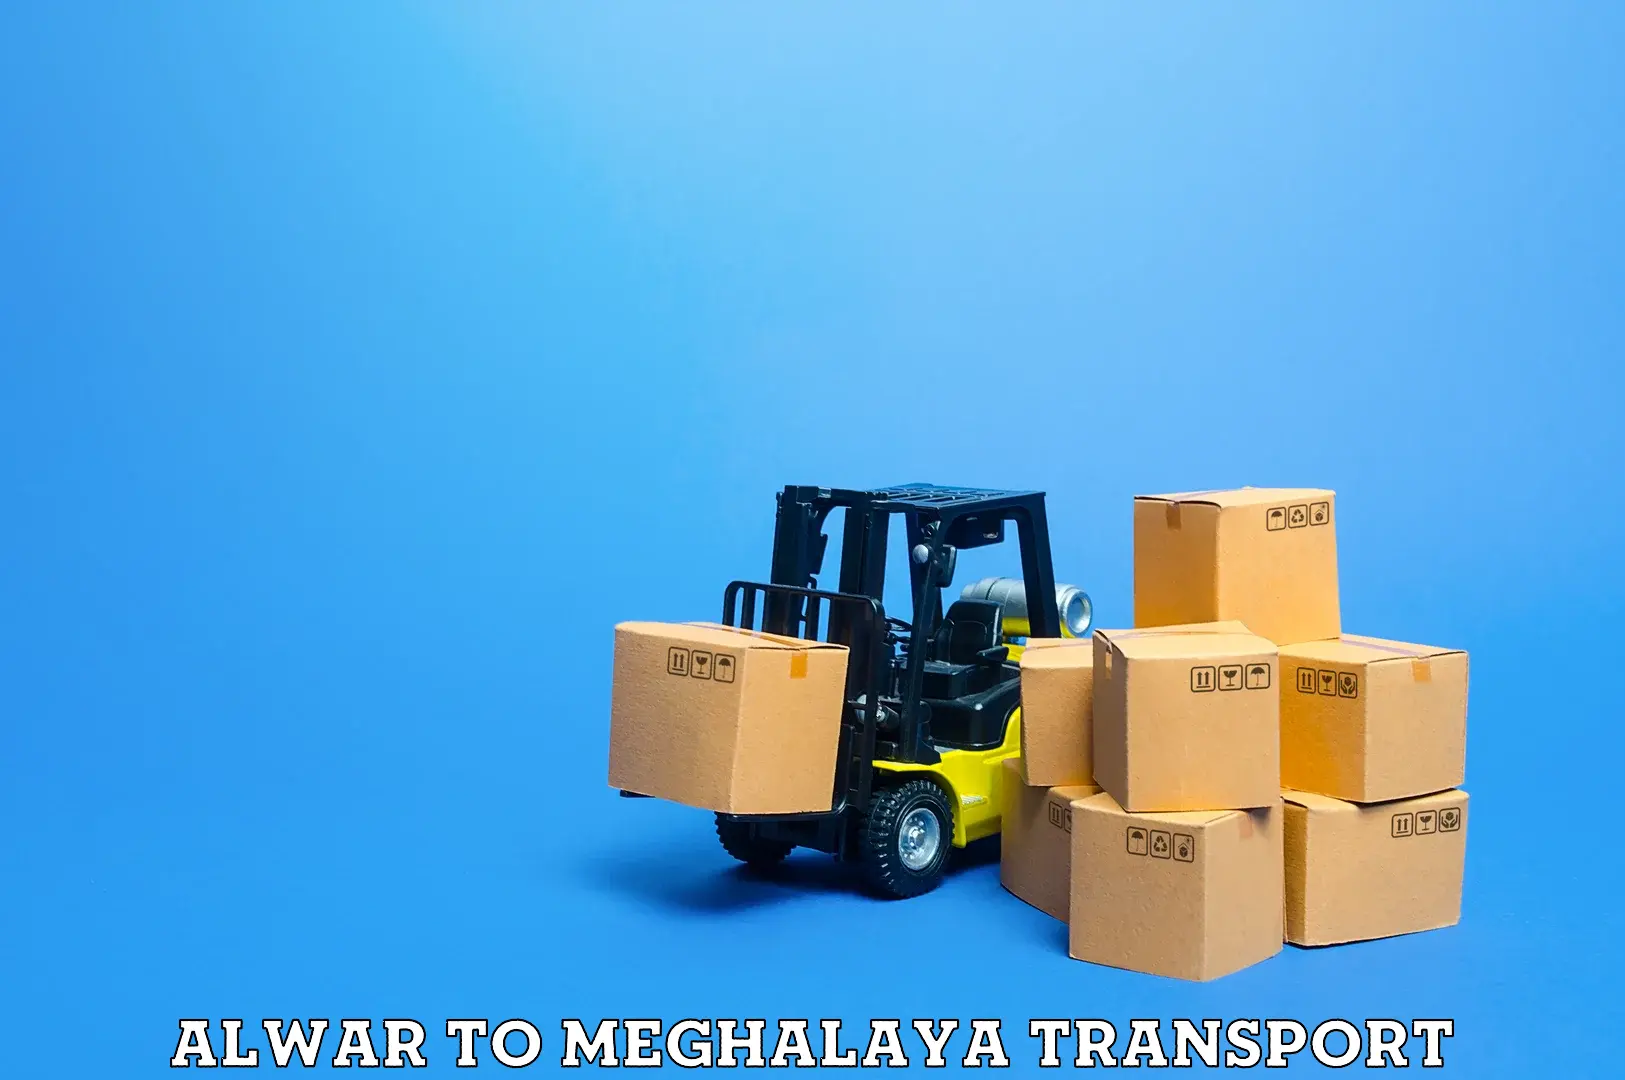 Express transport services Alwar to NIT Meghalaya